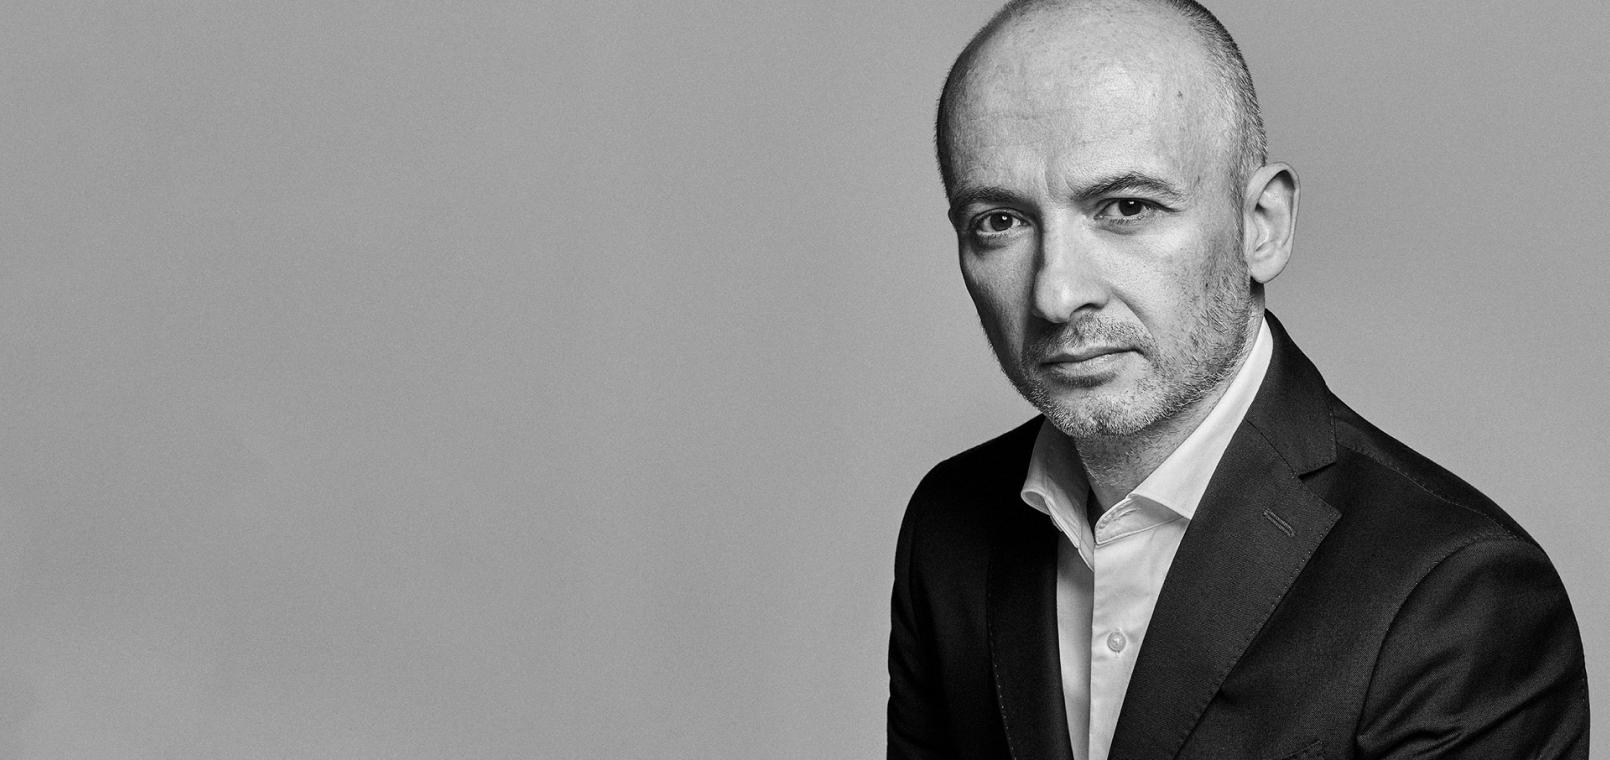 Óscar García Maceiras, CEO of Inditex, in black and white